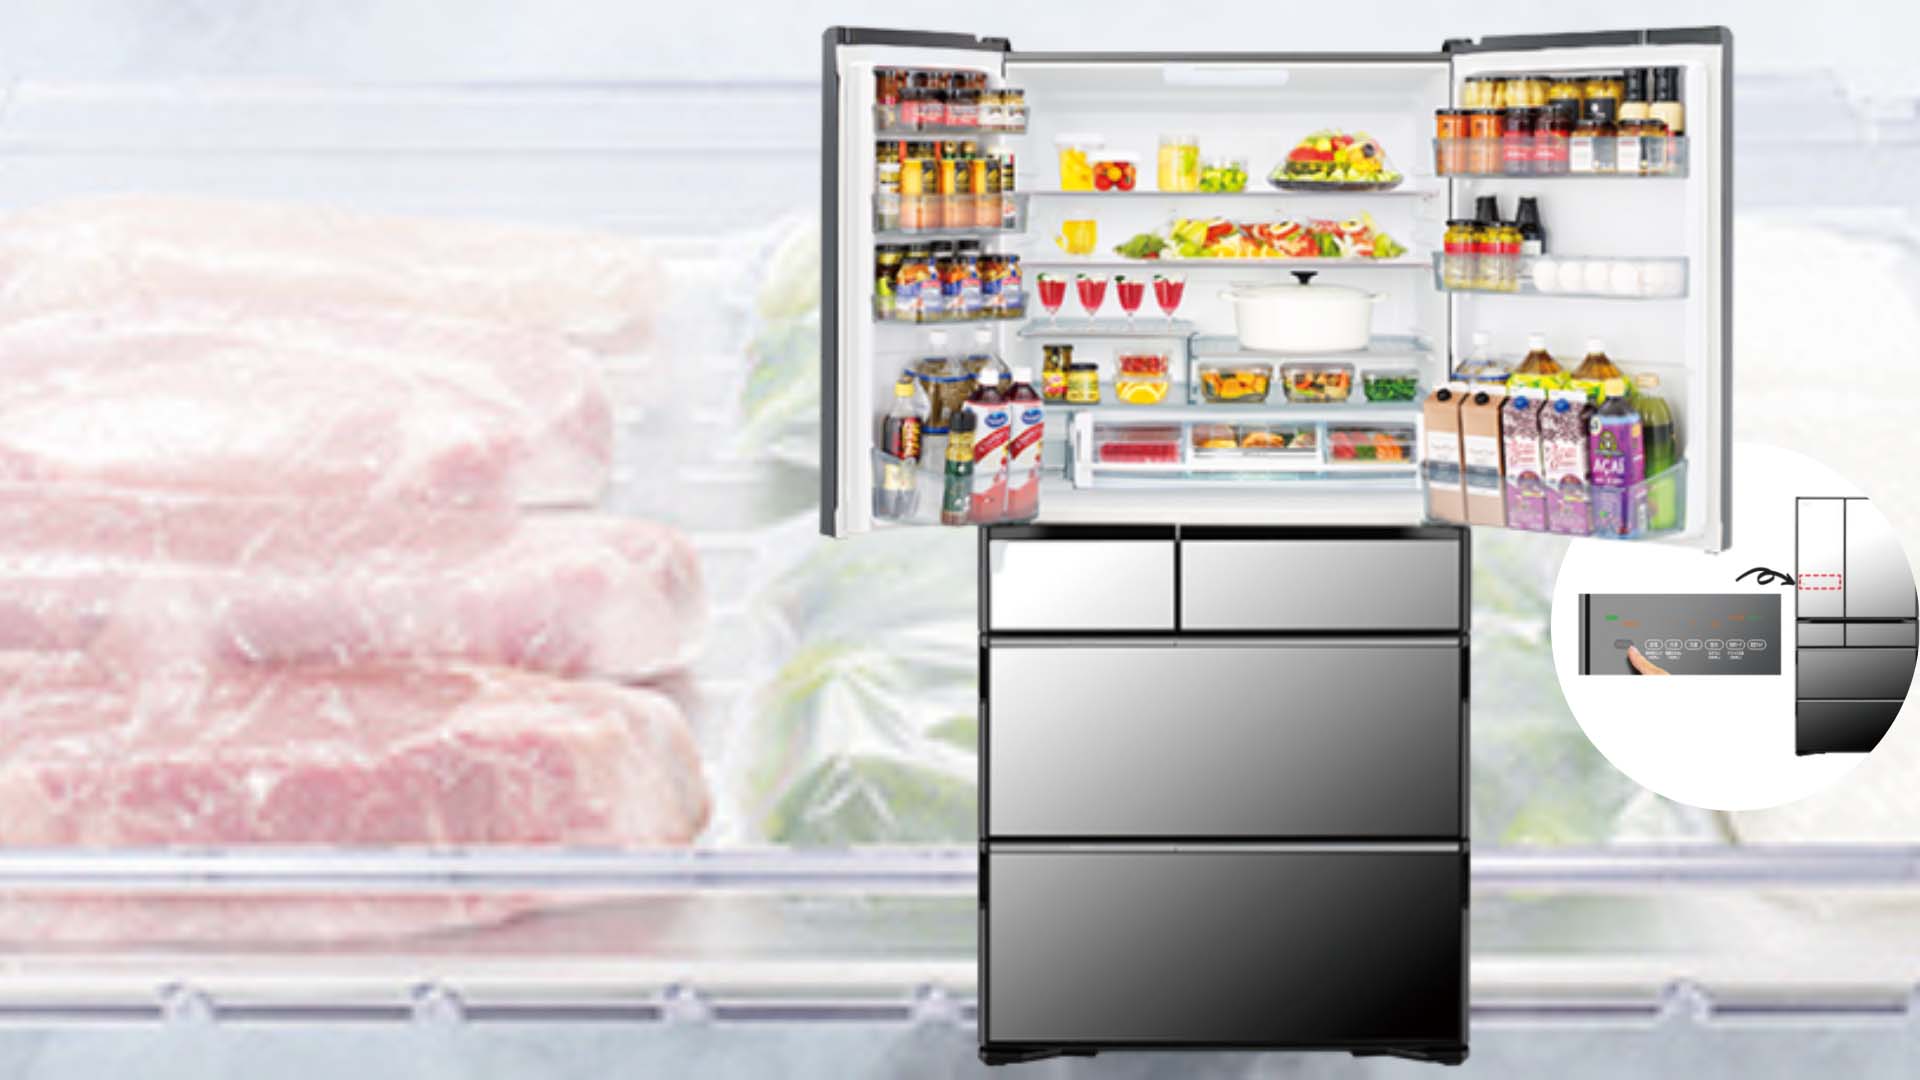 Tủ lạnh Hitachi R-WXC62S 615L